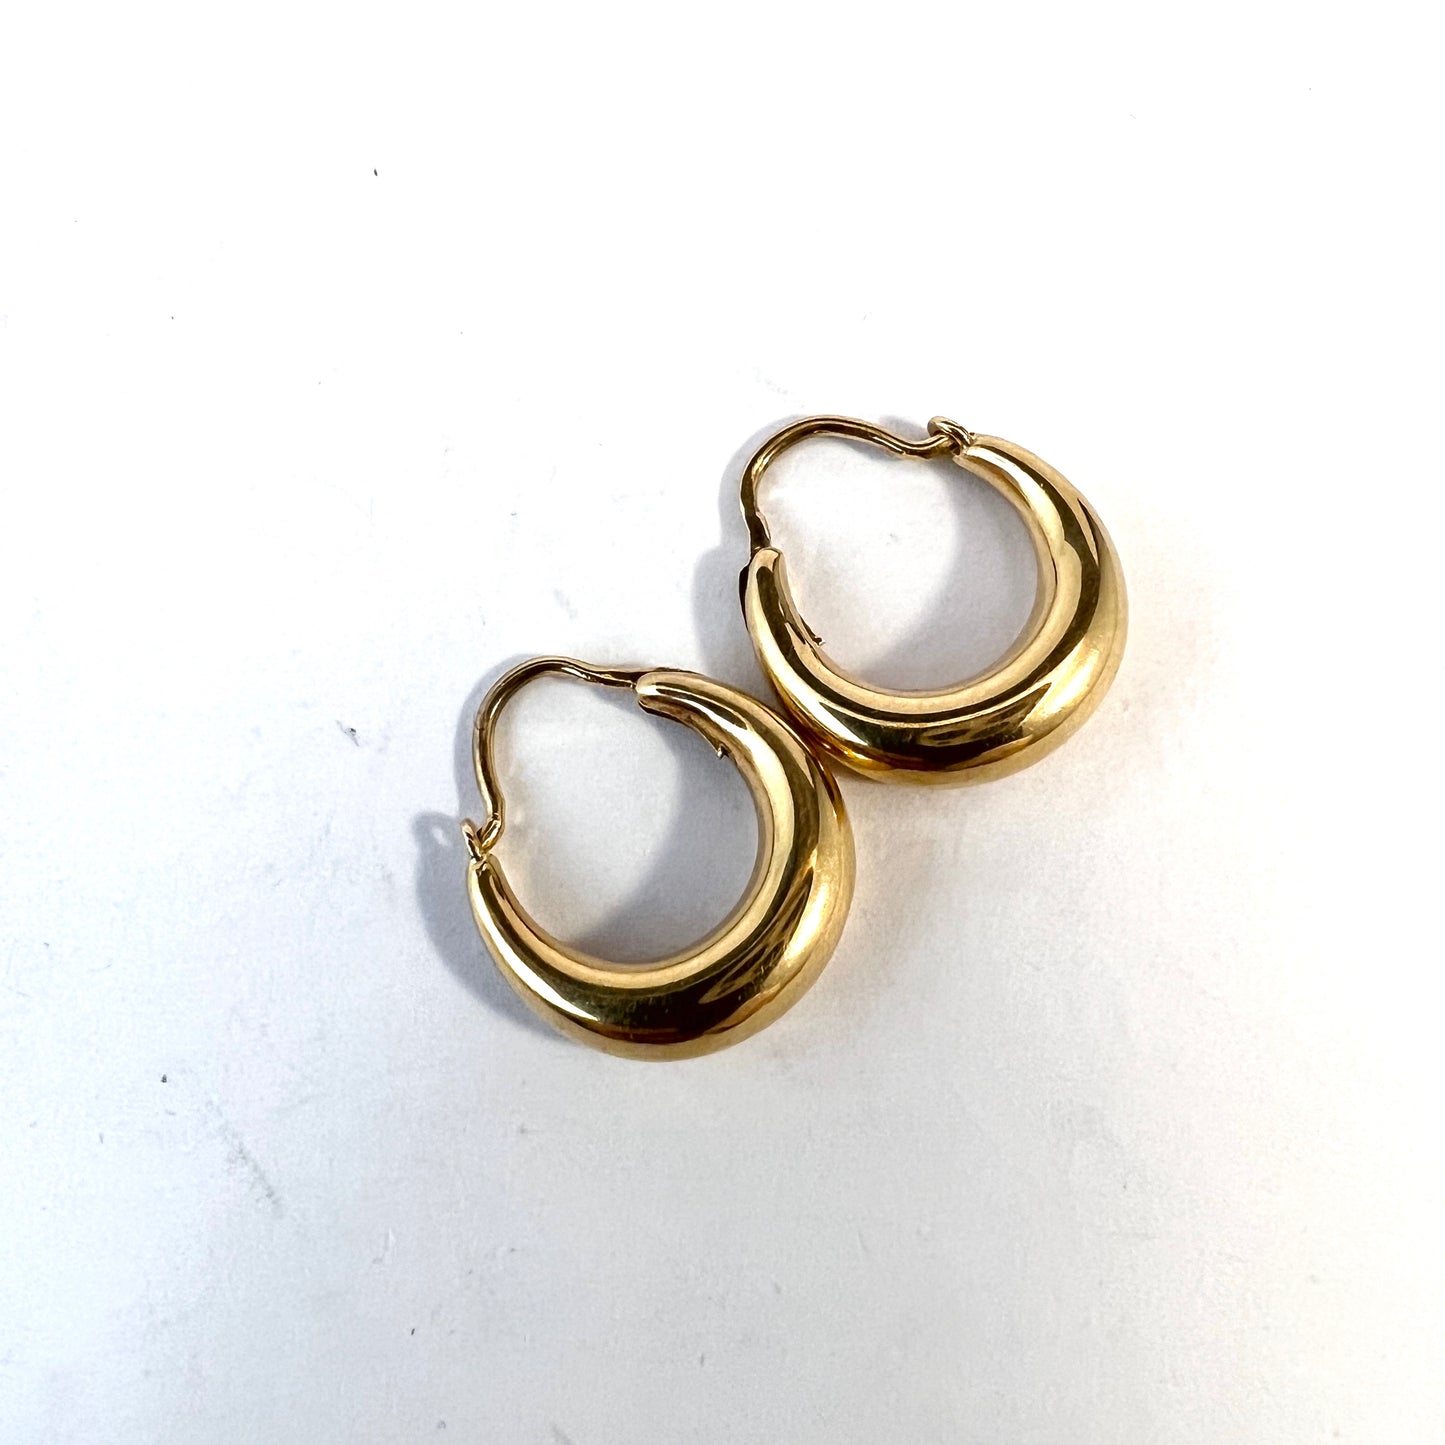 G Dahlgren, Sweden 1958. Vintage 18k Gold Earrings.